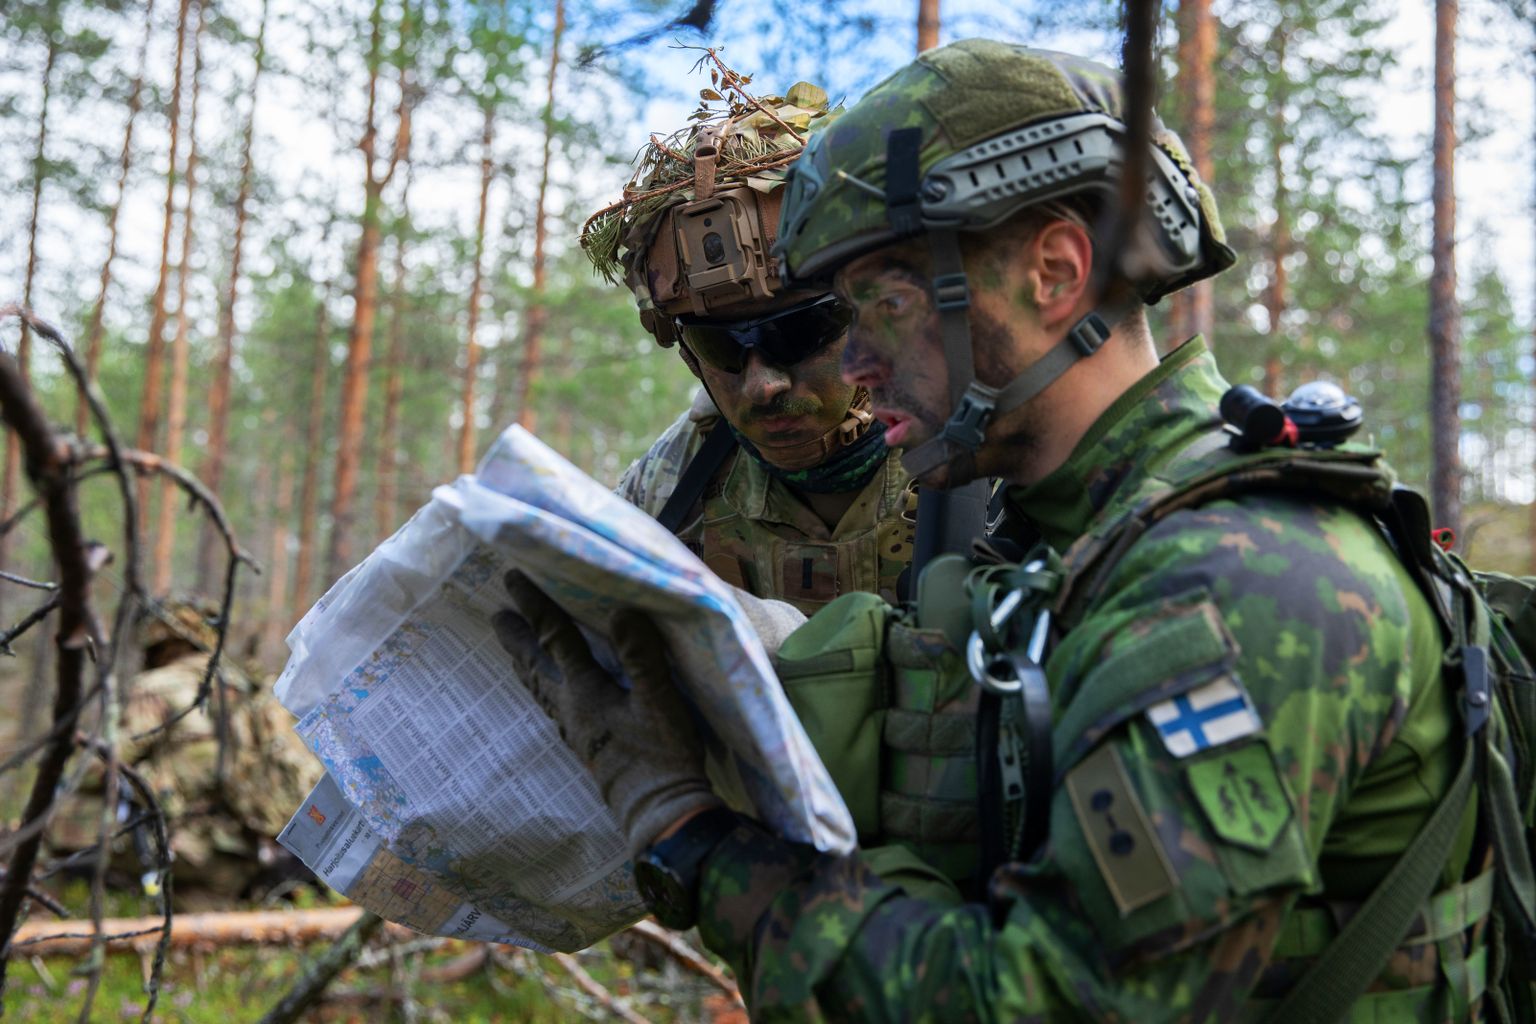 Soome kaitseväelane. Foto on illustratiivne.